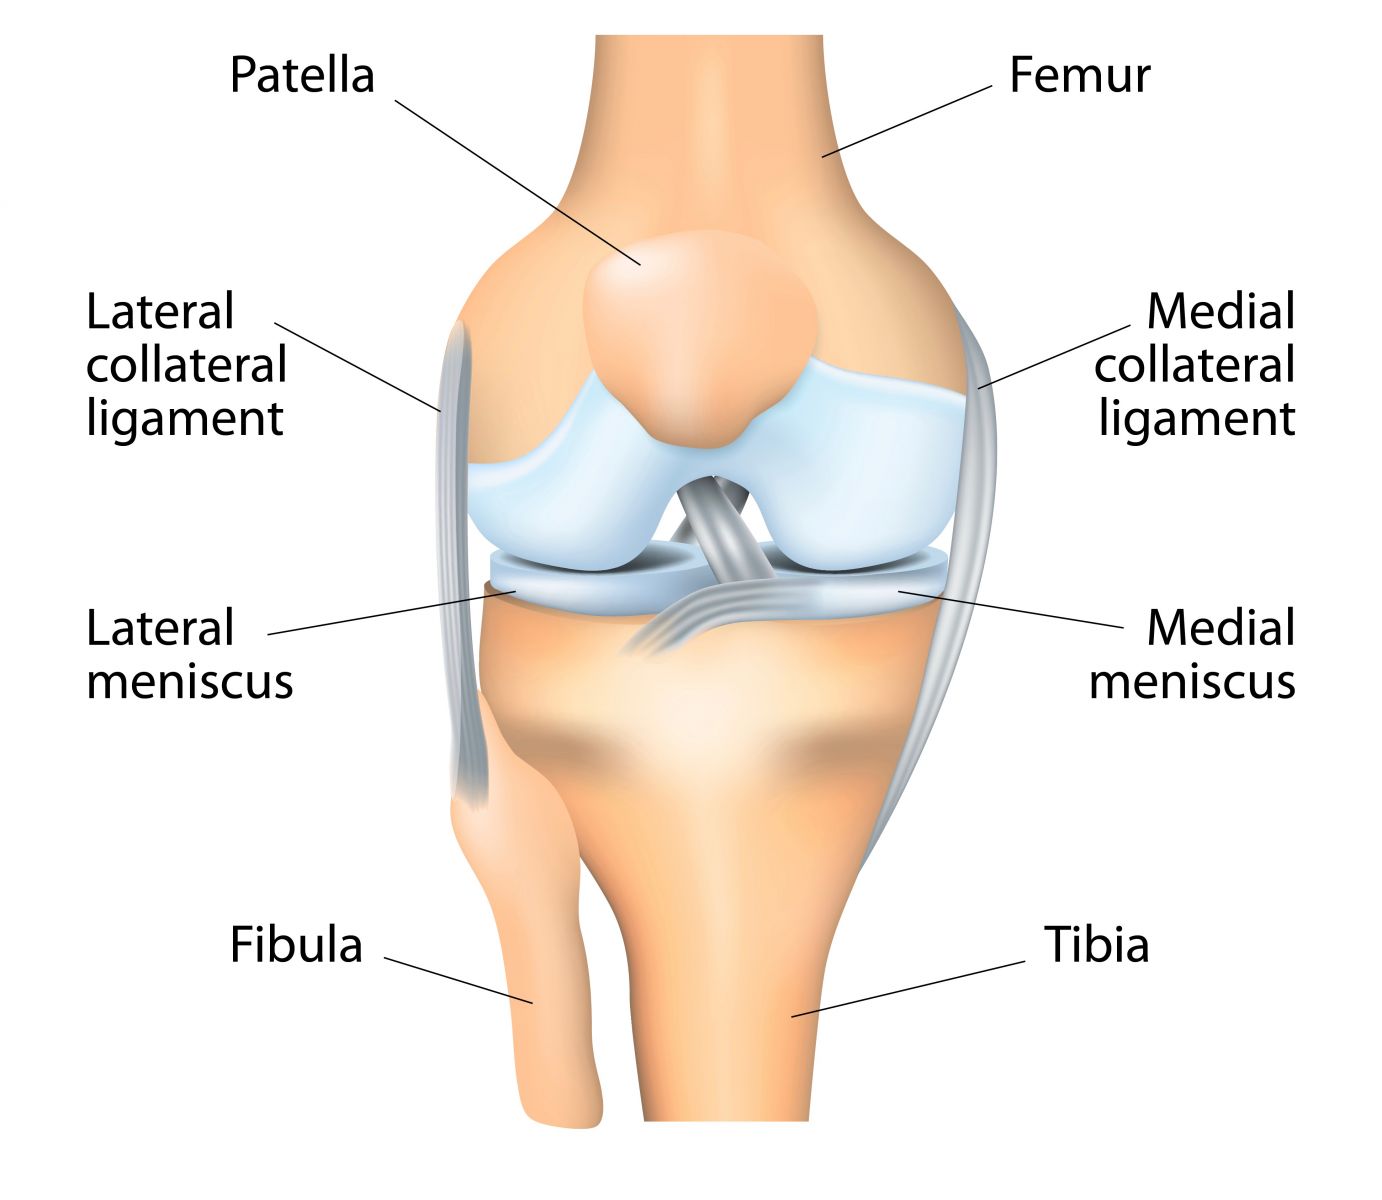 La rotule, l'Achille de la prothèse totale de genou